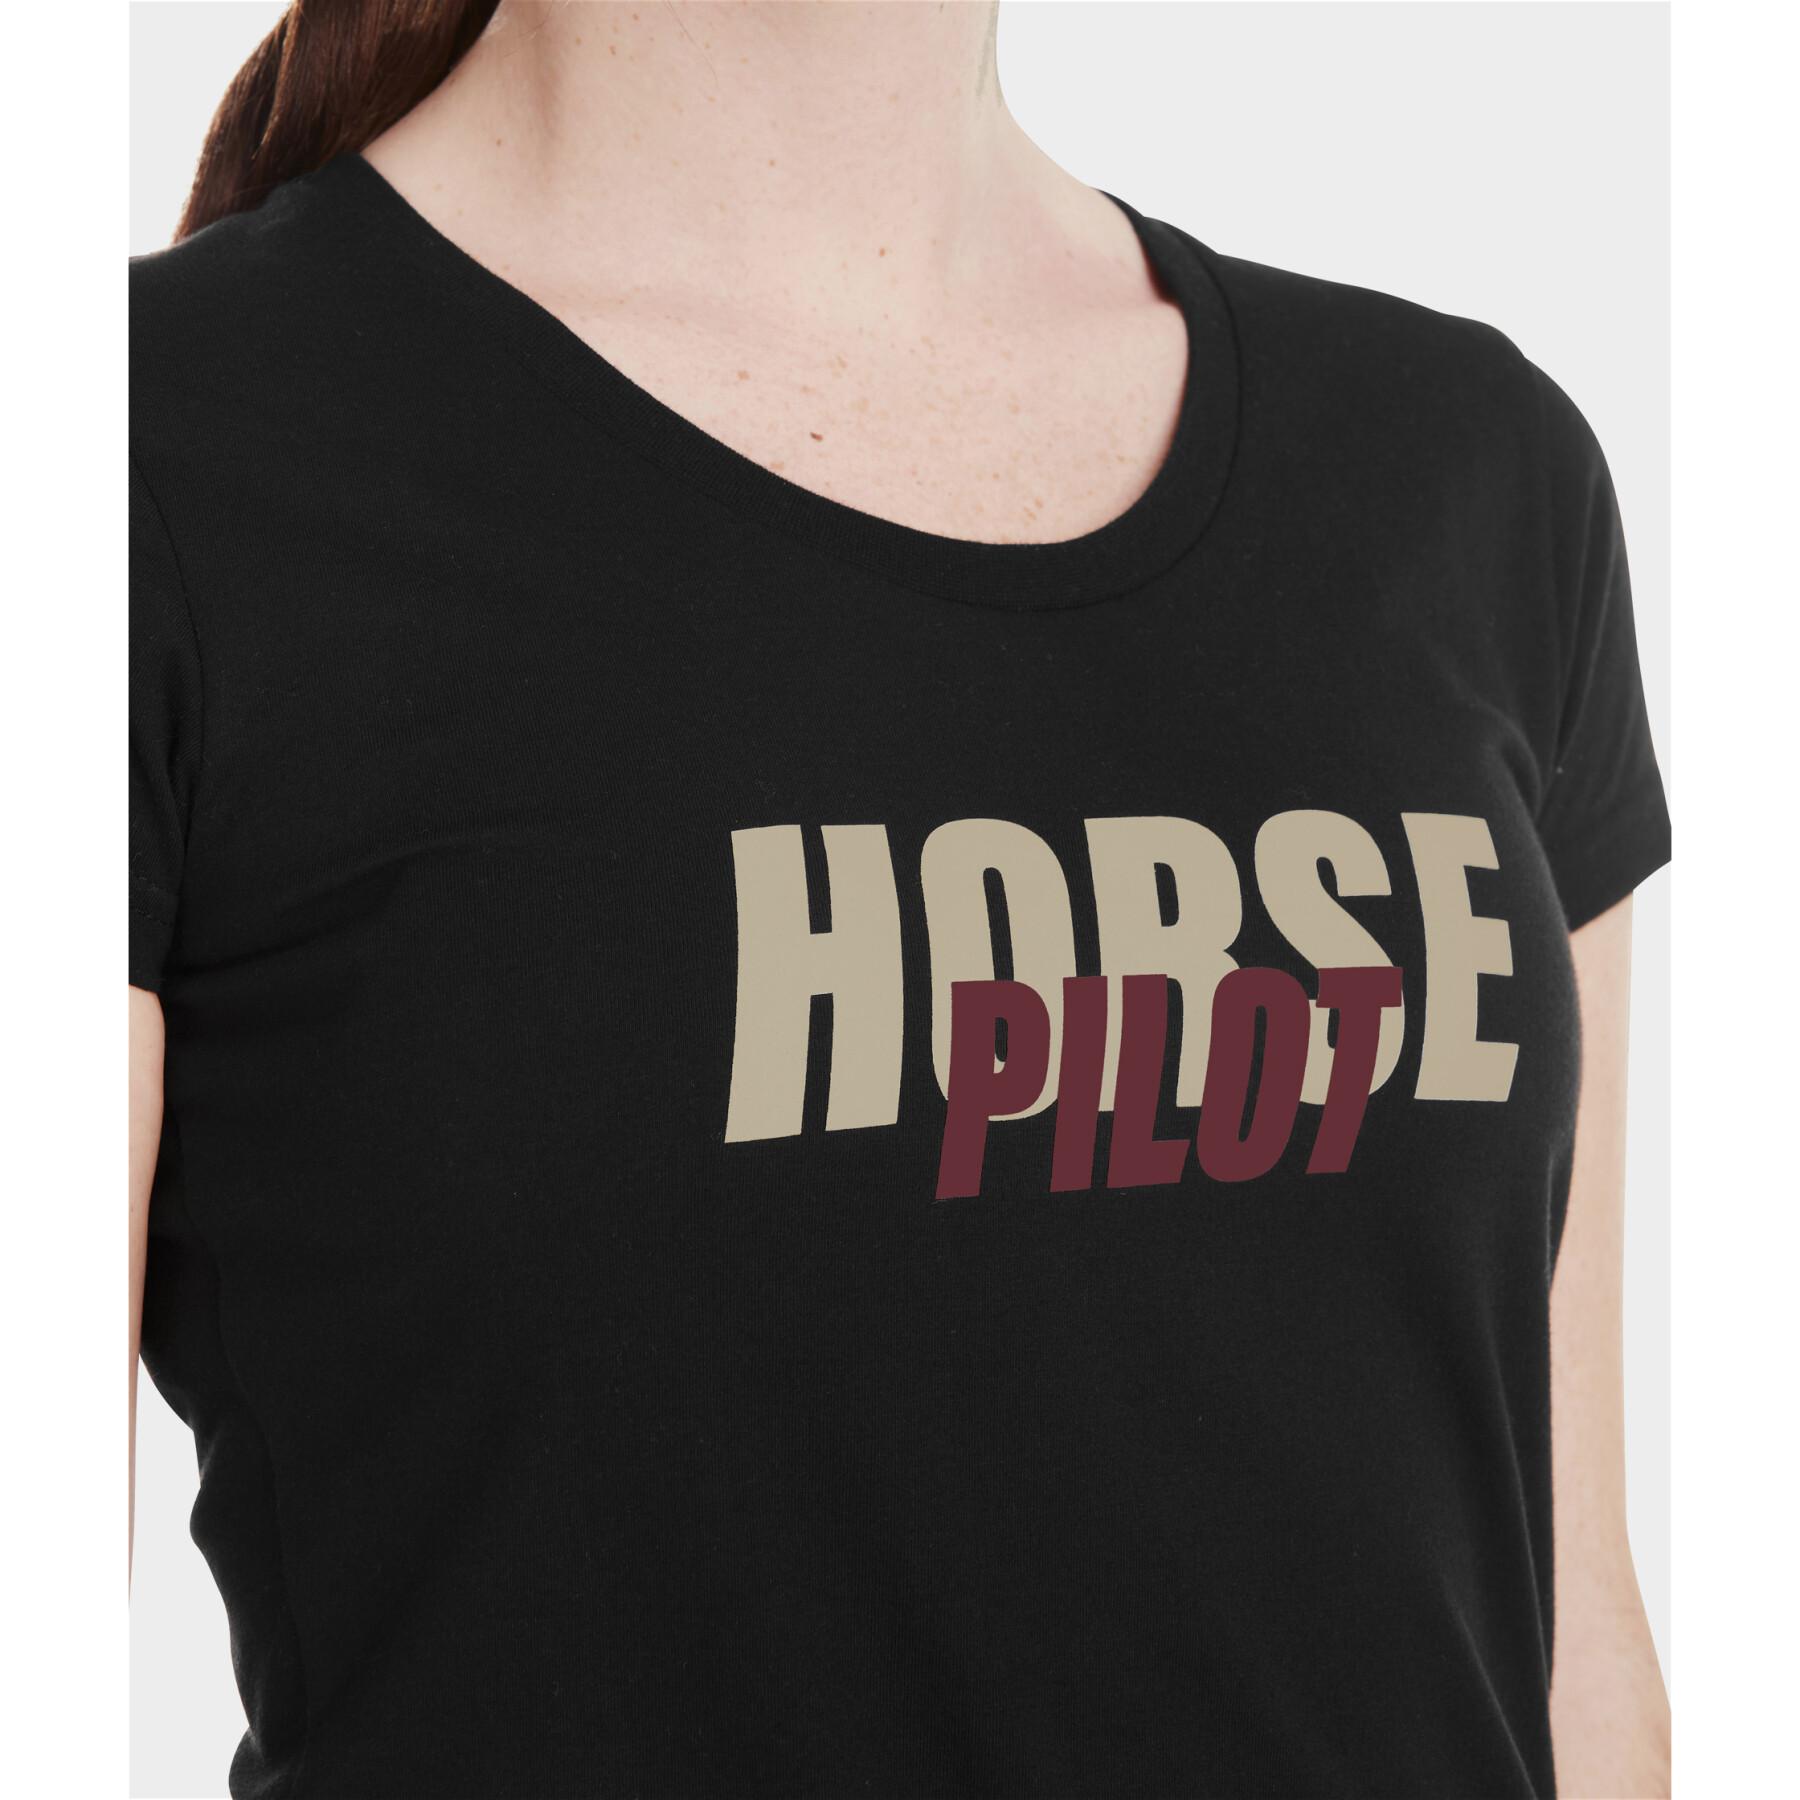 T-Shirt Damen Horse Pilot Team